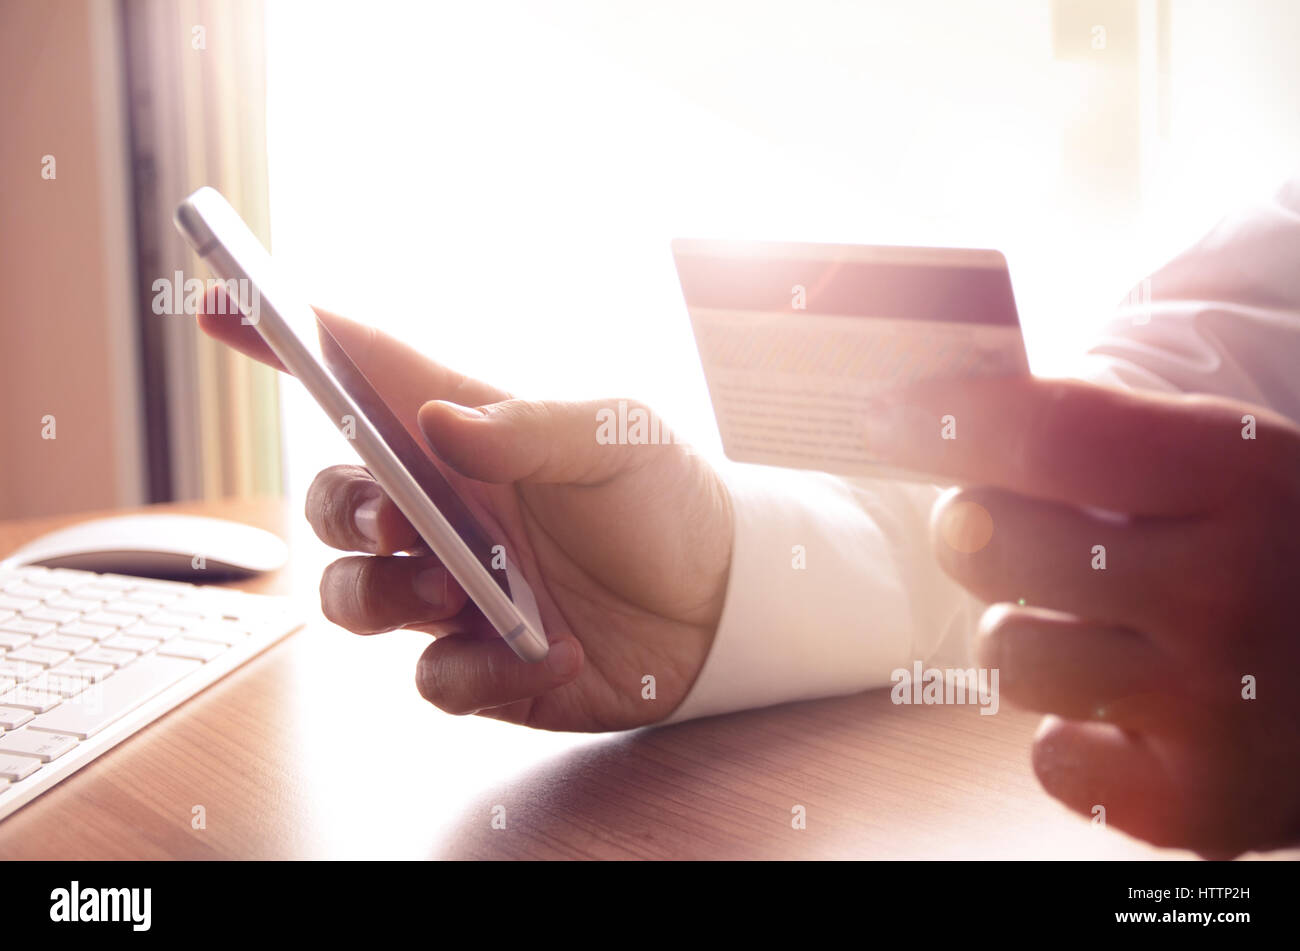 Nahaufnahme des Mannes Hände halten Sie Kreditkarten und Handy. Konzept für m-Commerce, Online-shopping, m-Banking, Internet-Sicherheit. Stockfoto